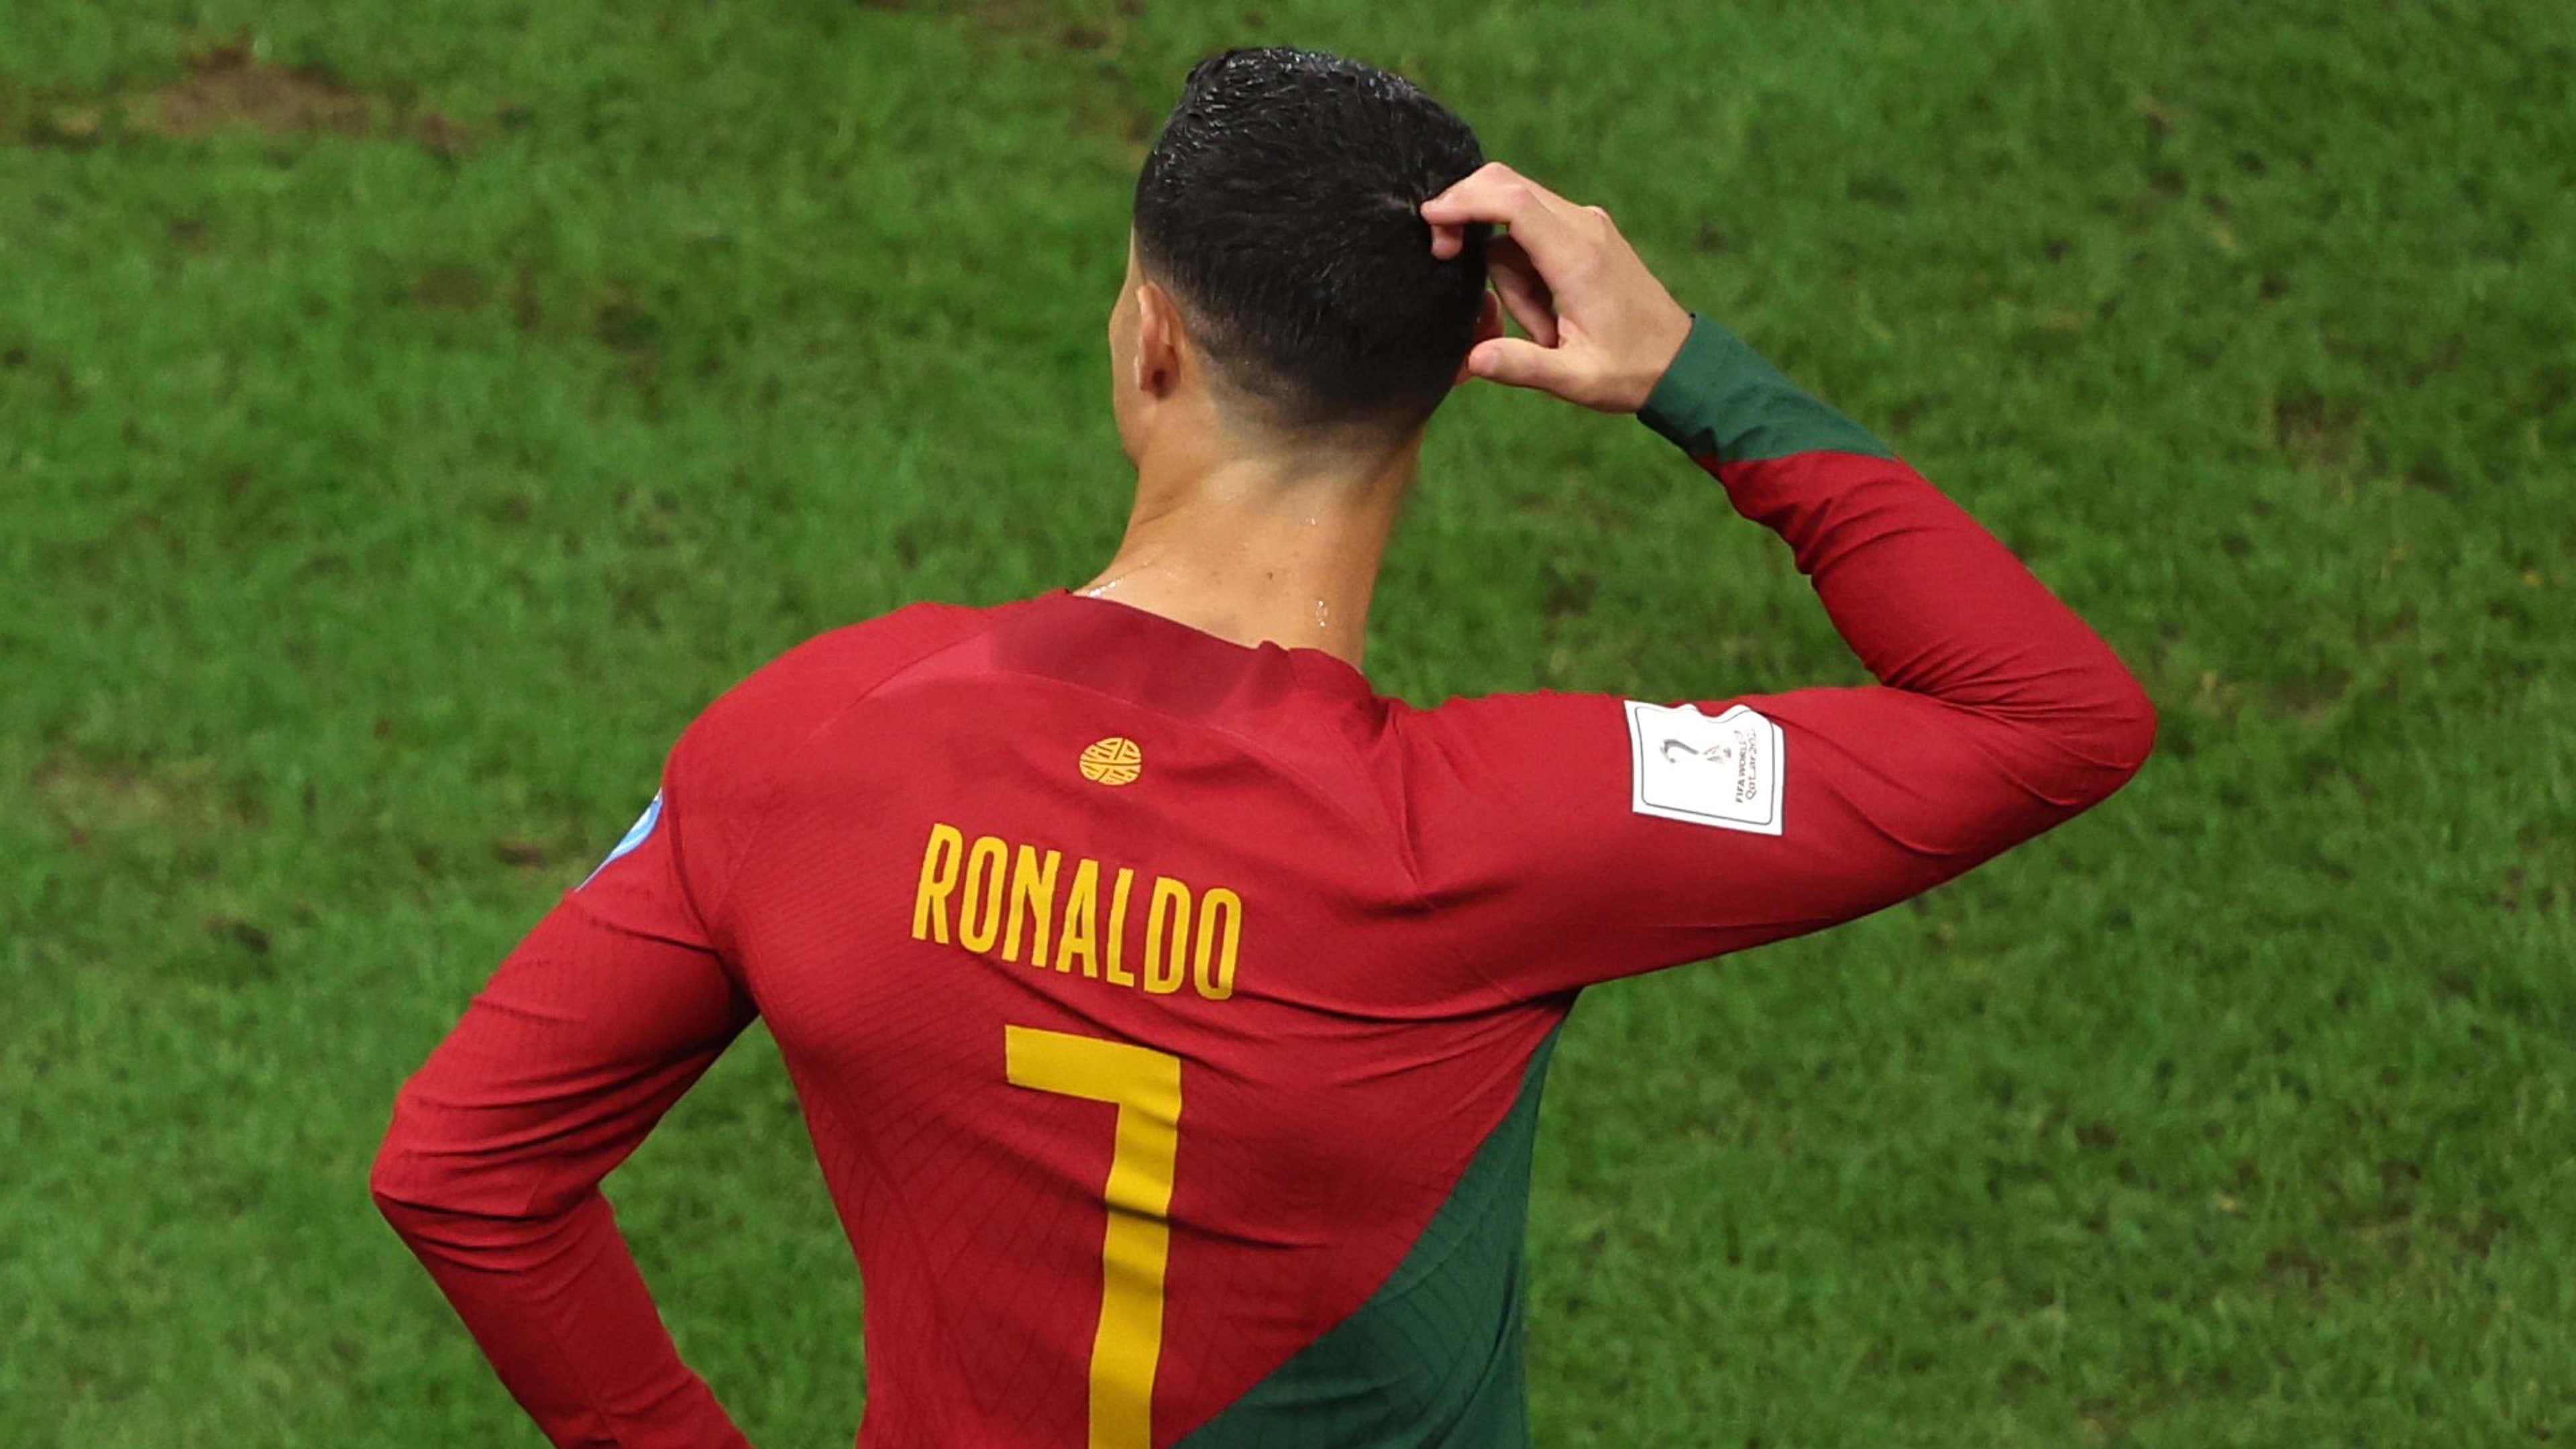 Cristiano Ronaldo 7 Portugal 2022 World Cup